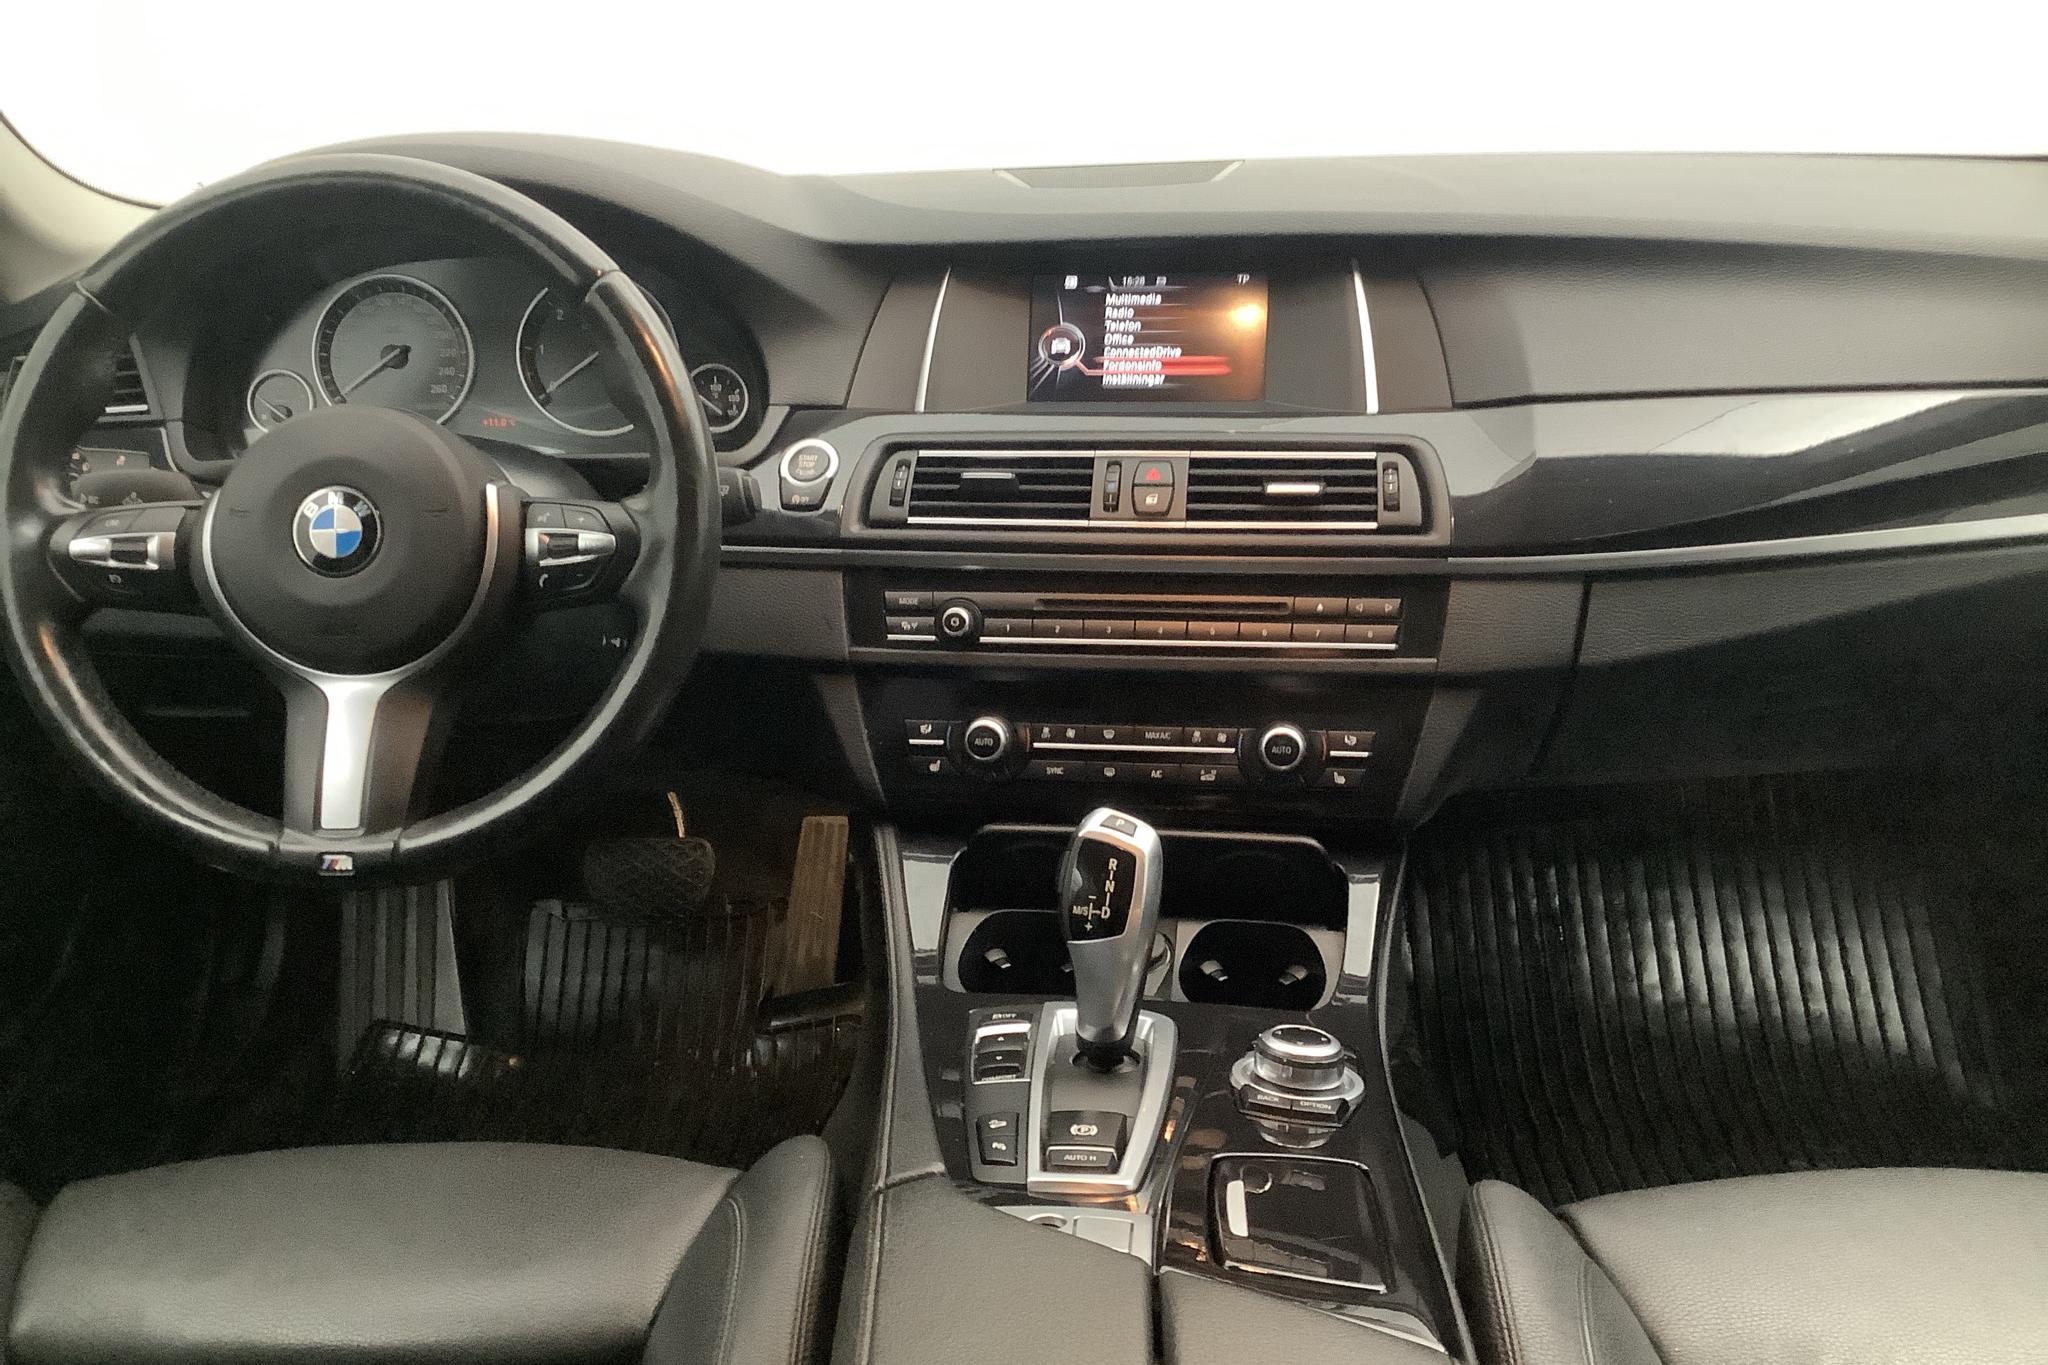 BMW 520d xDrive Touring, F11 (190hk) - 138 460 km - Automatic - brown - 2016